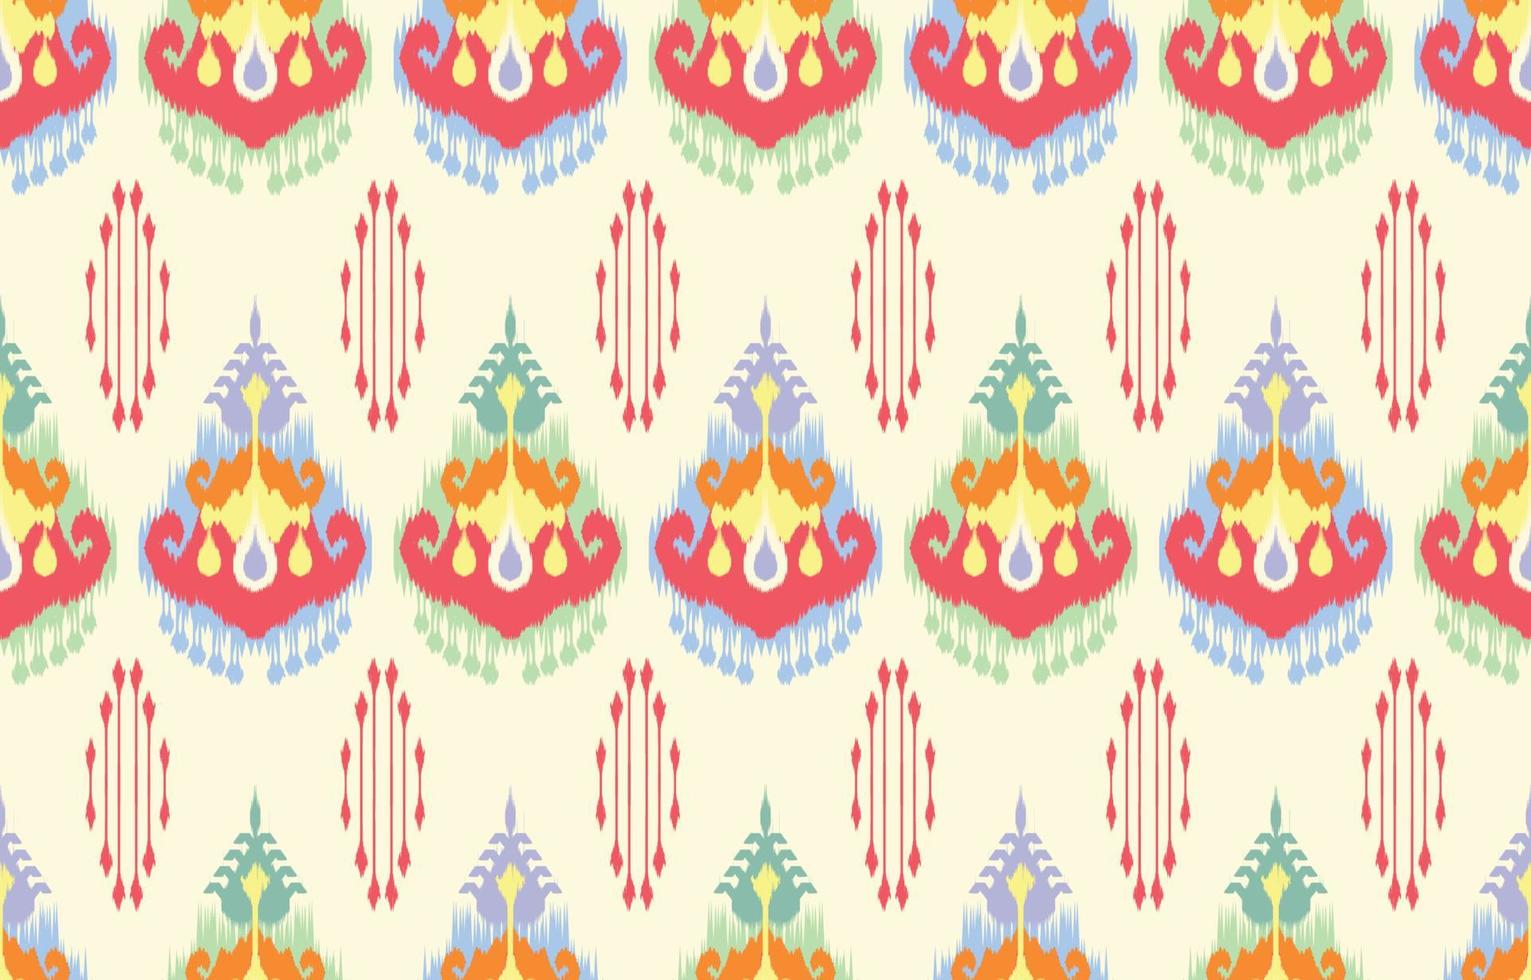 Patrón de ikat uzbeko, hermoso arte étnico. patrón impecable en bordados tribales y folclóricos al estilo de asia central. estampado de adornos de arte geométrico azteca.diseño para alfombras, papel pintado, ropa, envoltura, tela vector